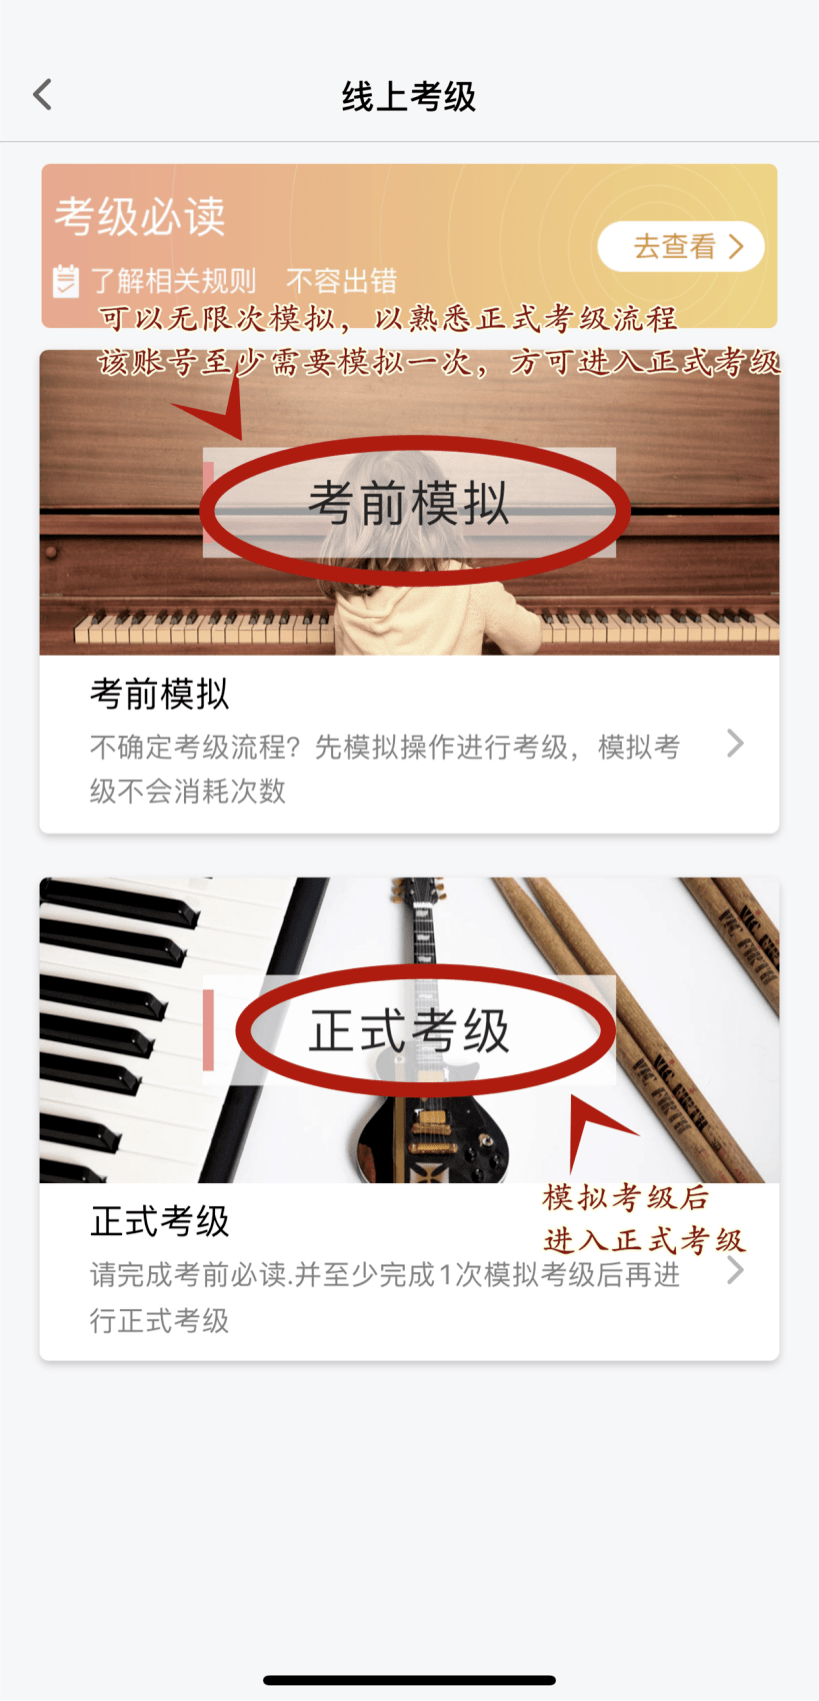 2021年上海音乐家协会钢琴夏季线上考级操作流程及乐理模拟提醒